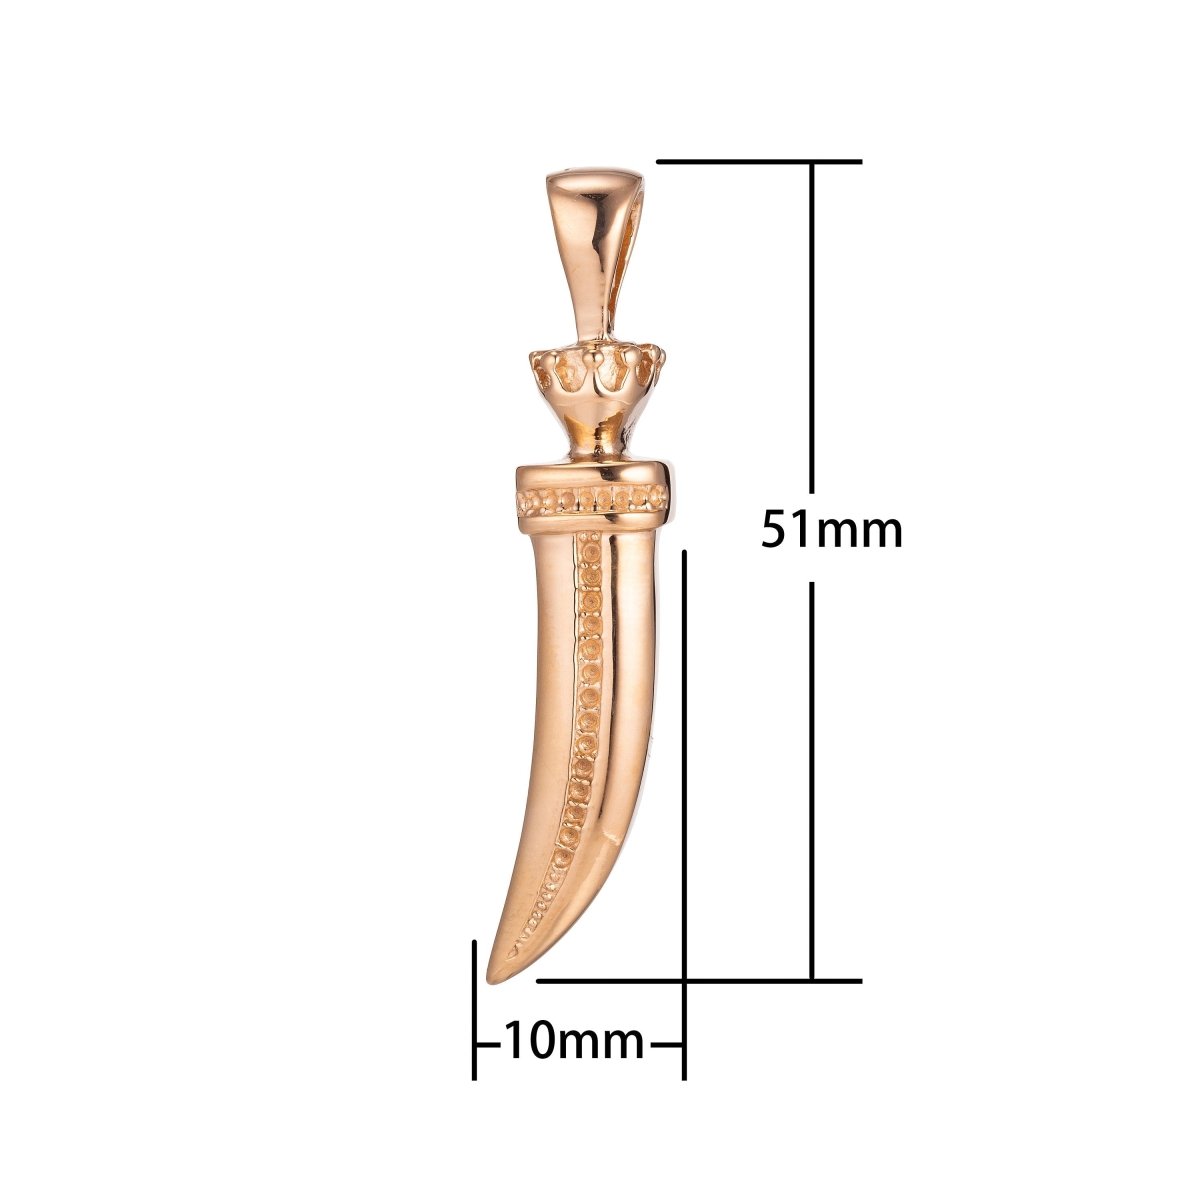 Gold Horn Pendant Tusk Horn Pendant Tibetan Ethnic Tribal Pendant Bohemian Large Tusk Horn Pendant for Necklace Jewelry Making J-596 - DLUXCA